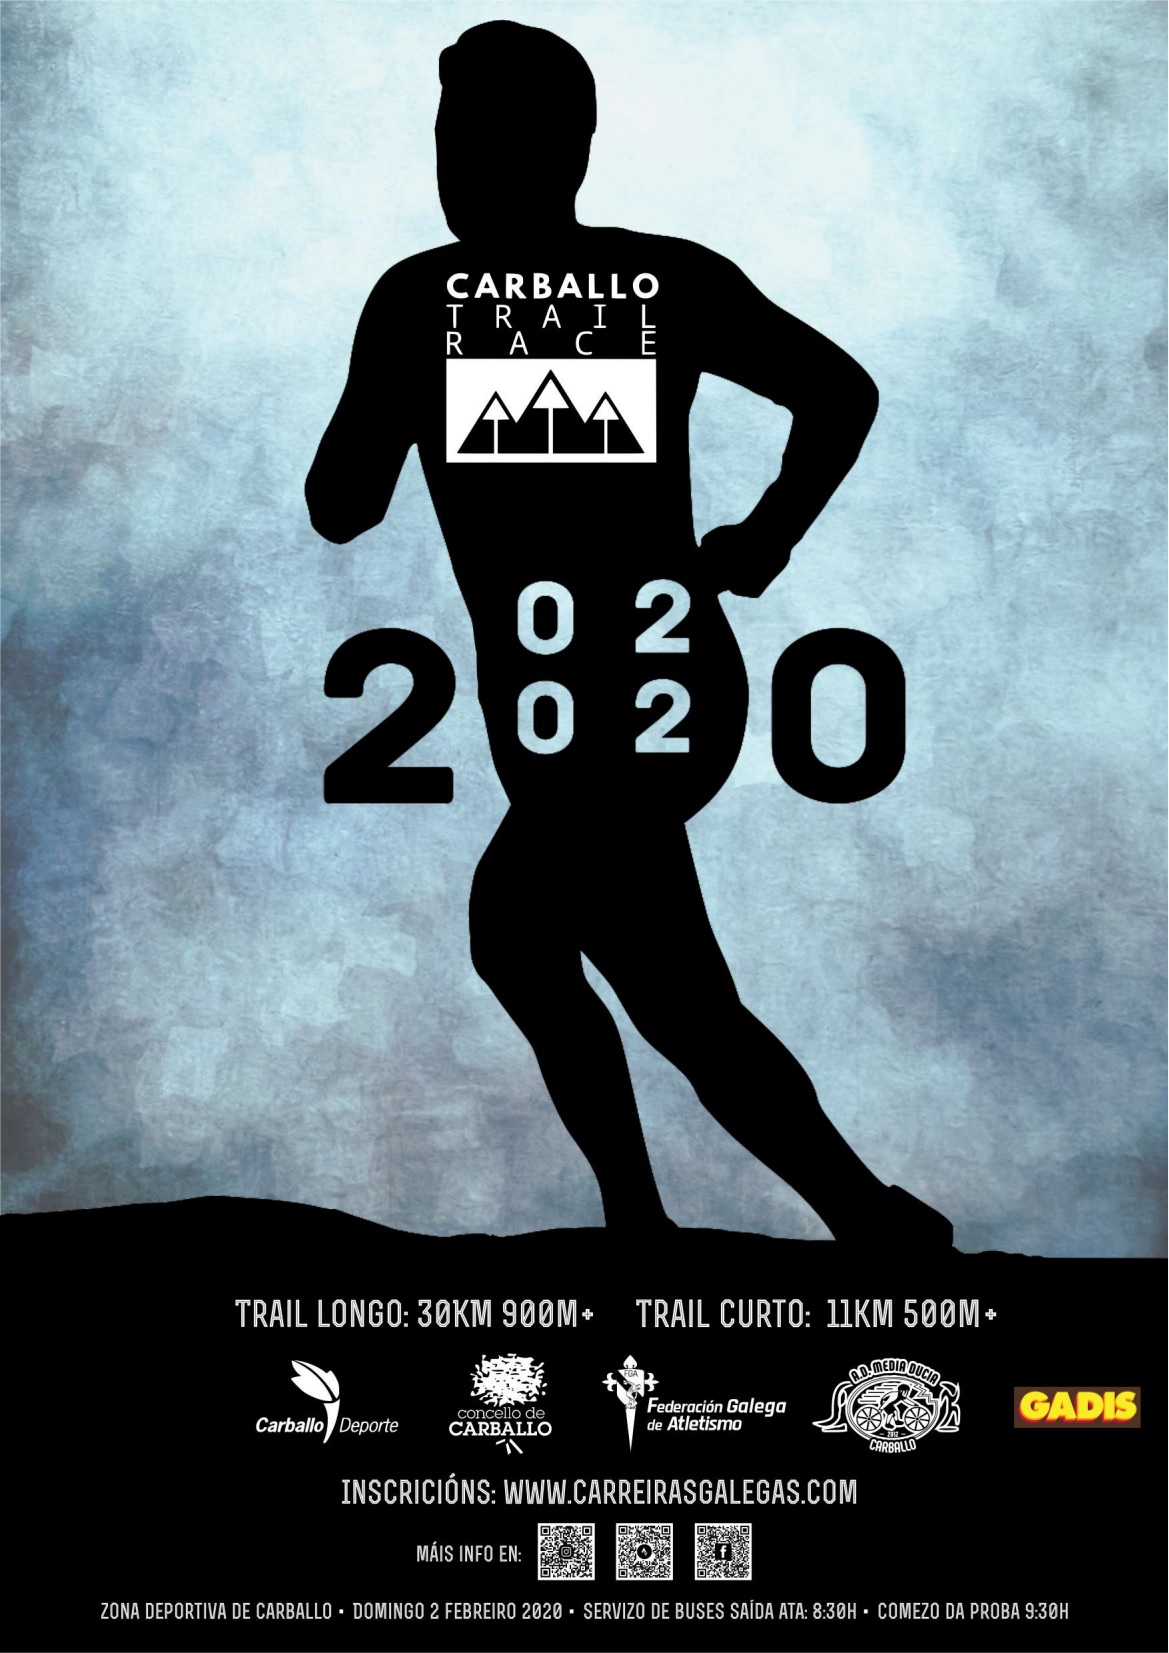 Carballo Trail Race 2020